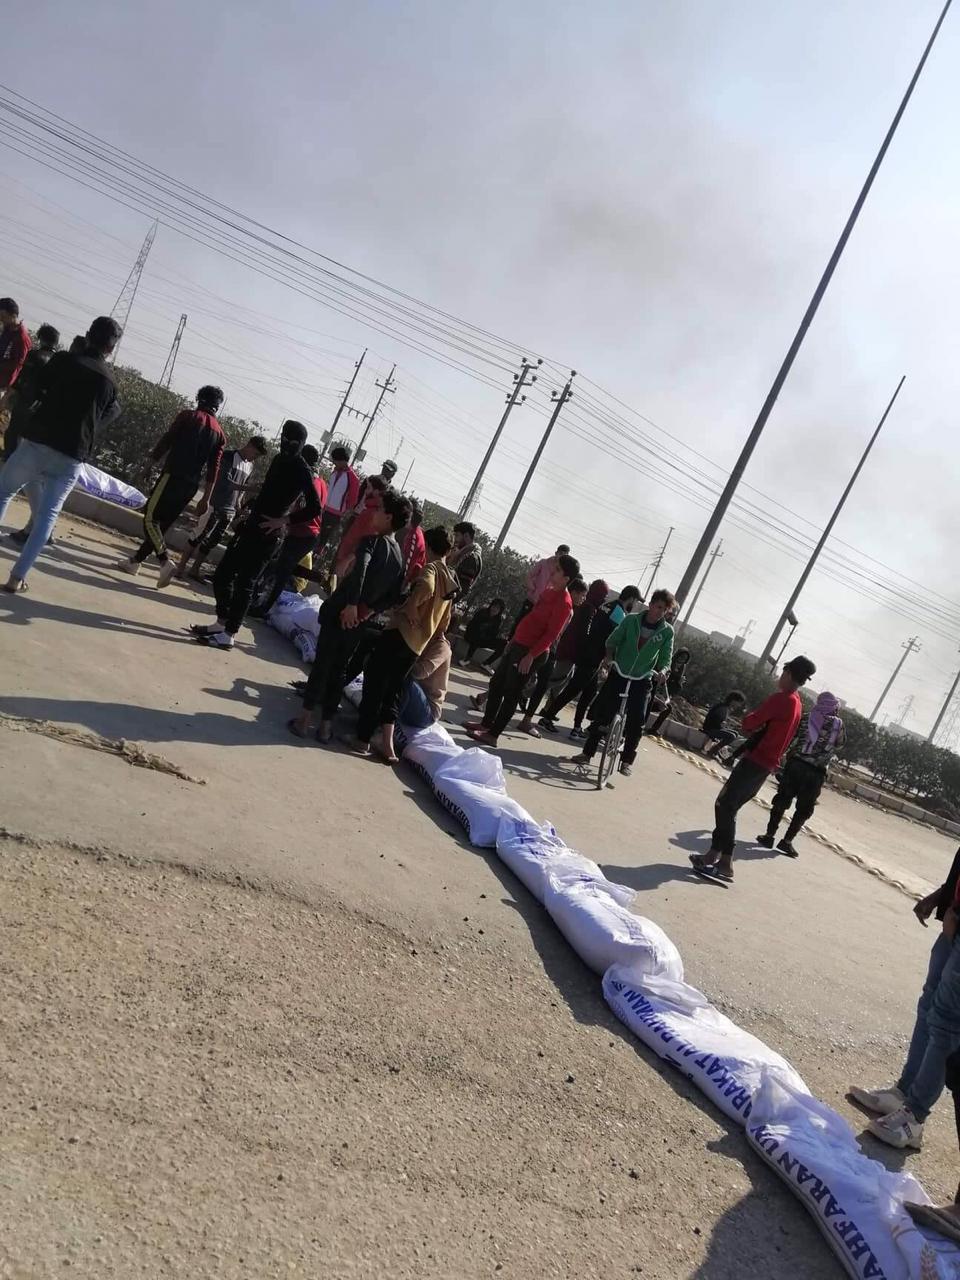 كأنهم من داعش الارهابي الجيش ينشر صور متظاهرين قبض عليهم الآن على وسائل الاعلام الى بلاسخارت والمرجعية مع التحية!